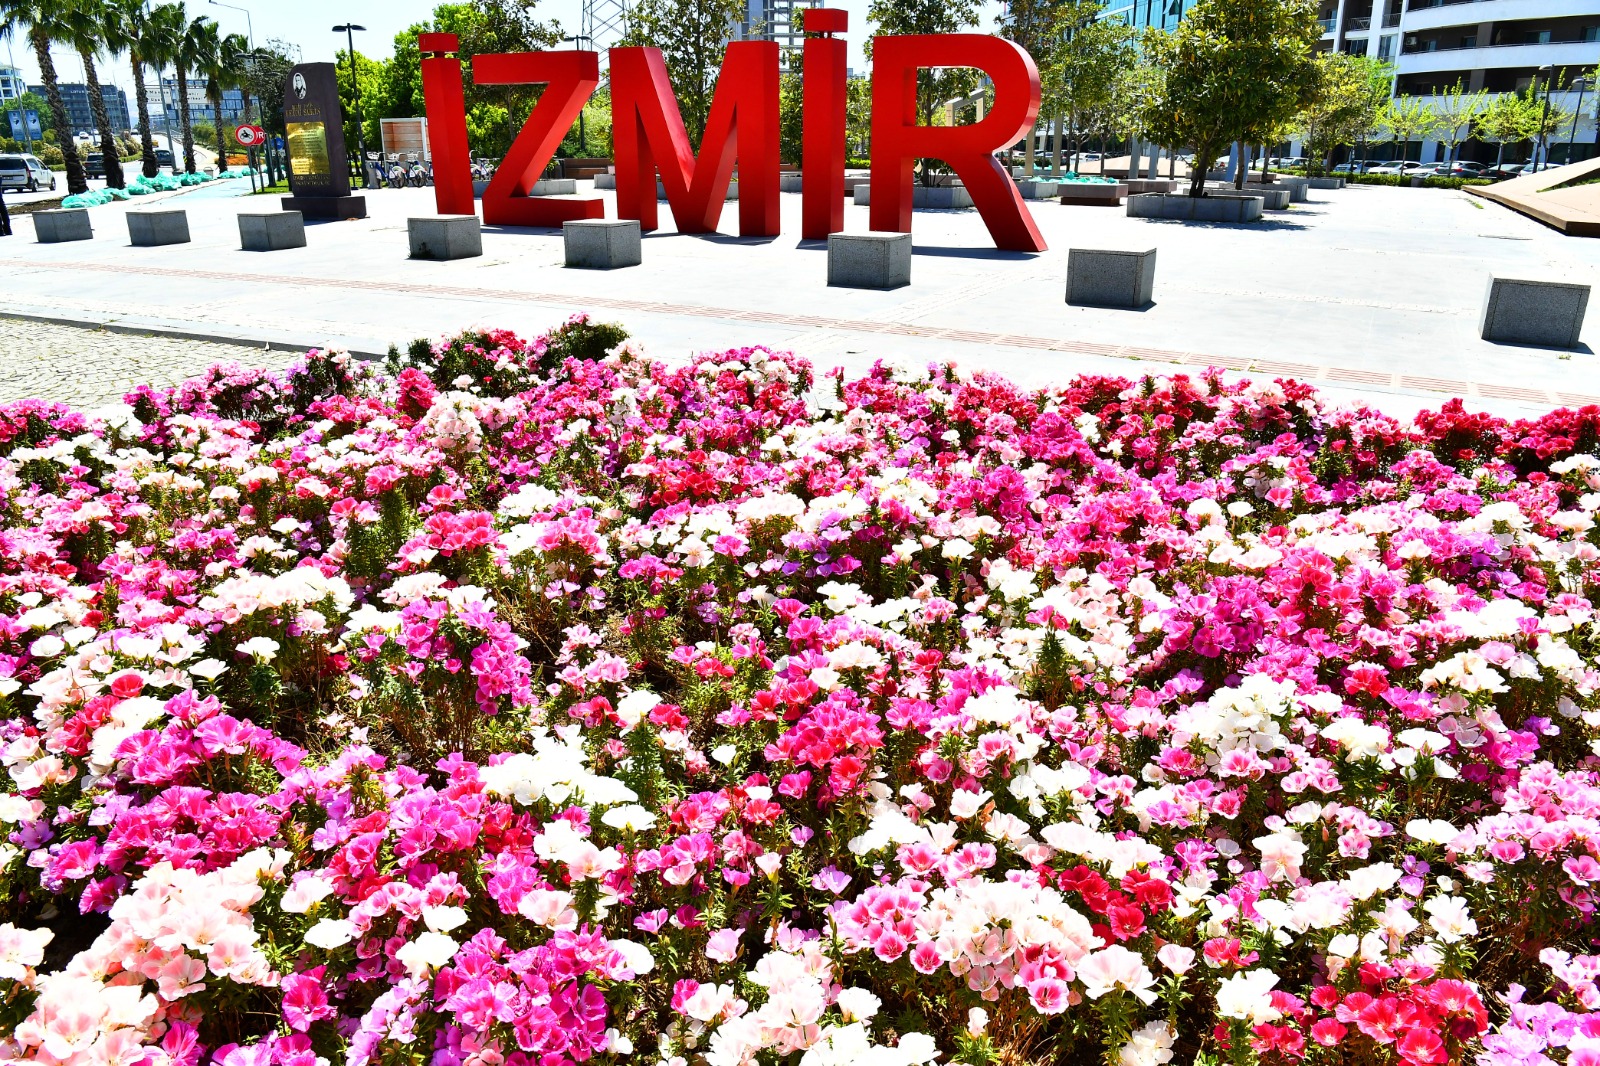 İzmir Büyükşehir Belediyesi baharı kentin dört bir yanına diktiği çiçeklerle karşıladı. Rengarenk çiçeklerle süslenen alanlar kenti mis kokuya boğdu.